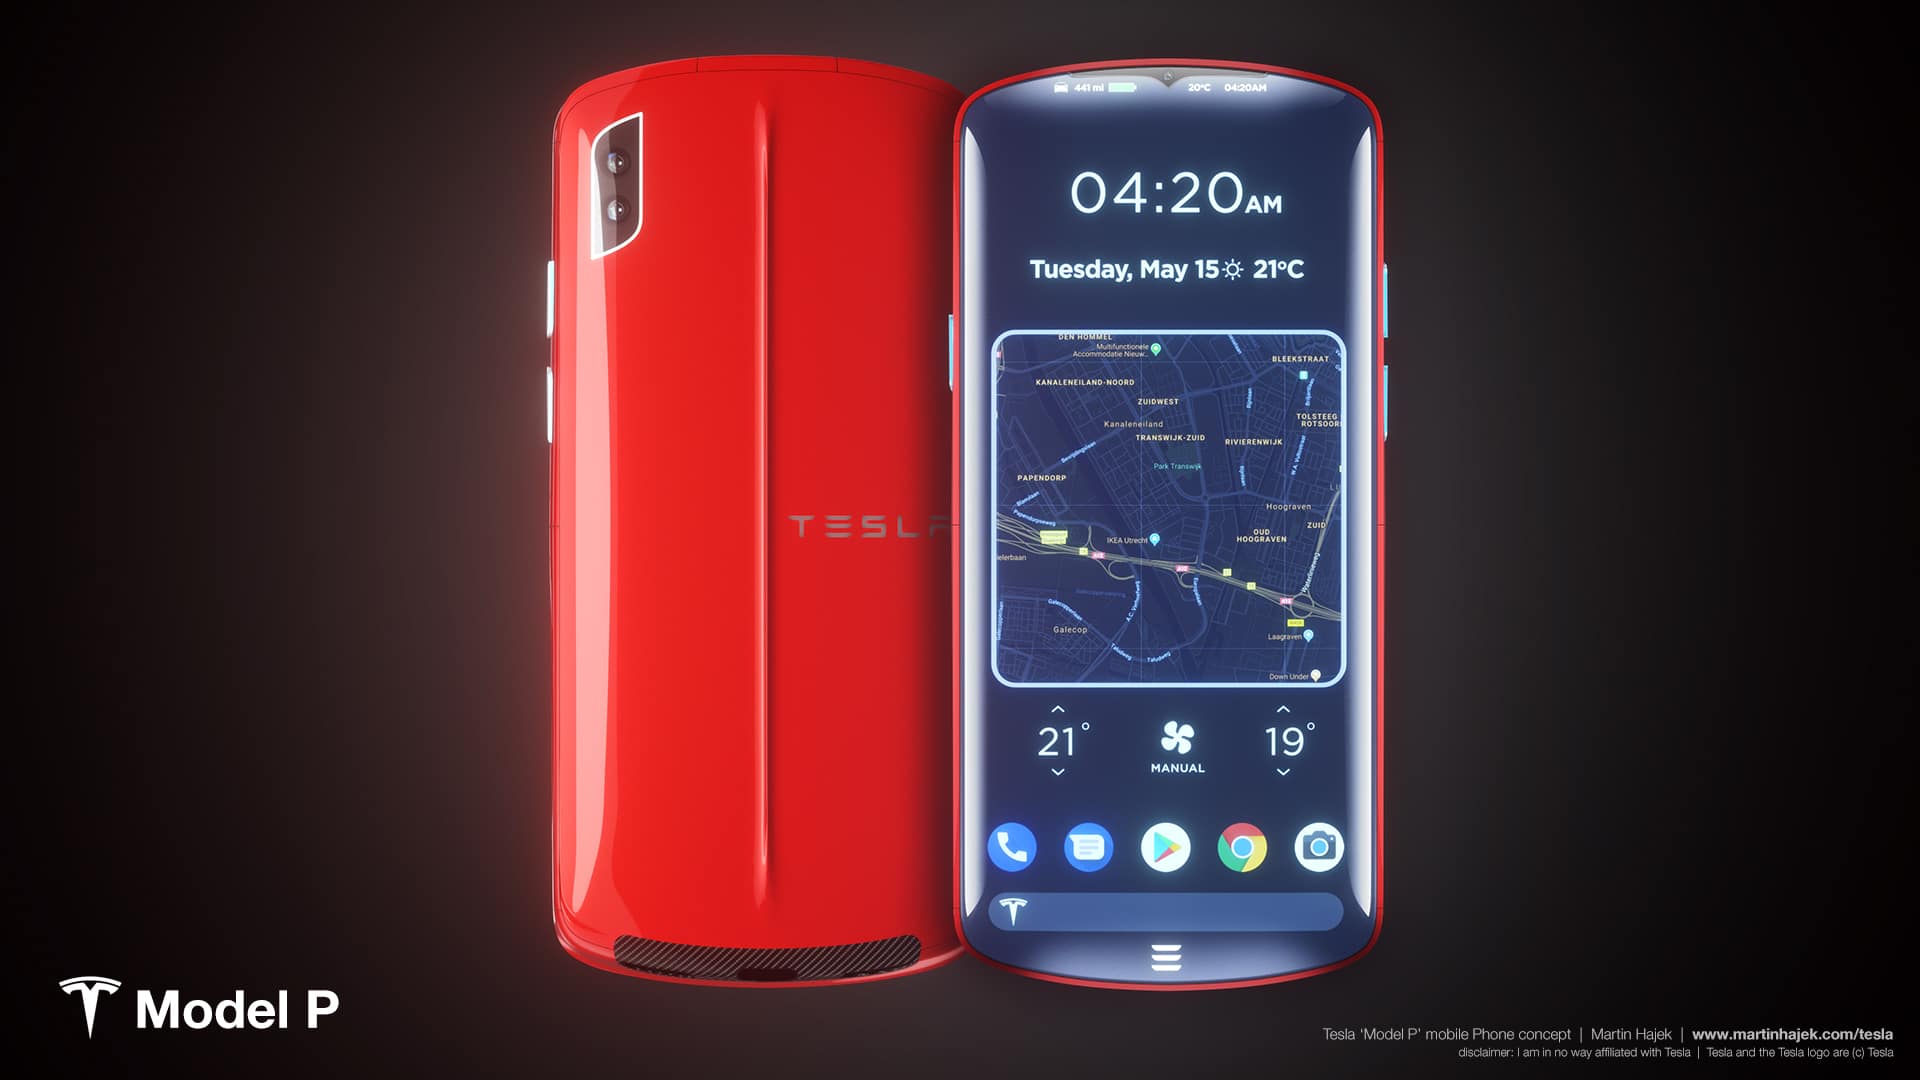 telemóvel da Tesla 